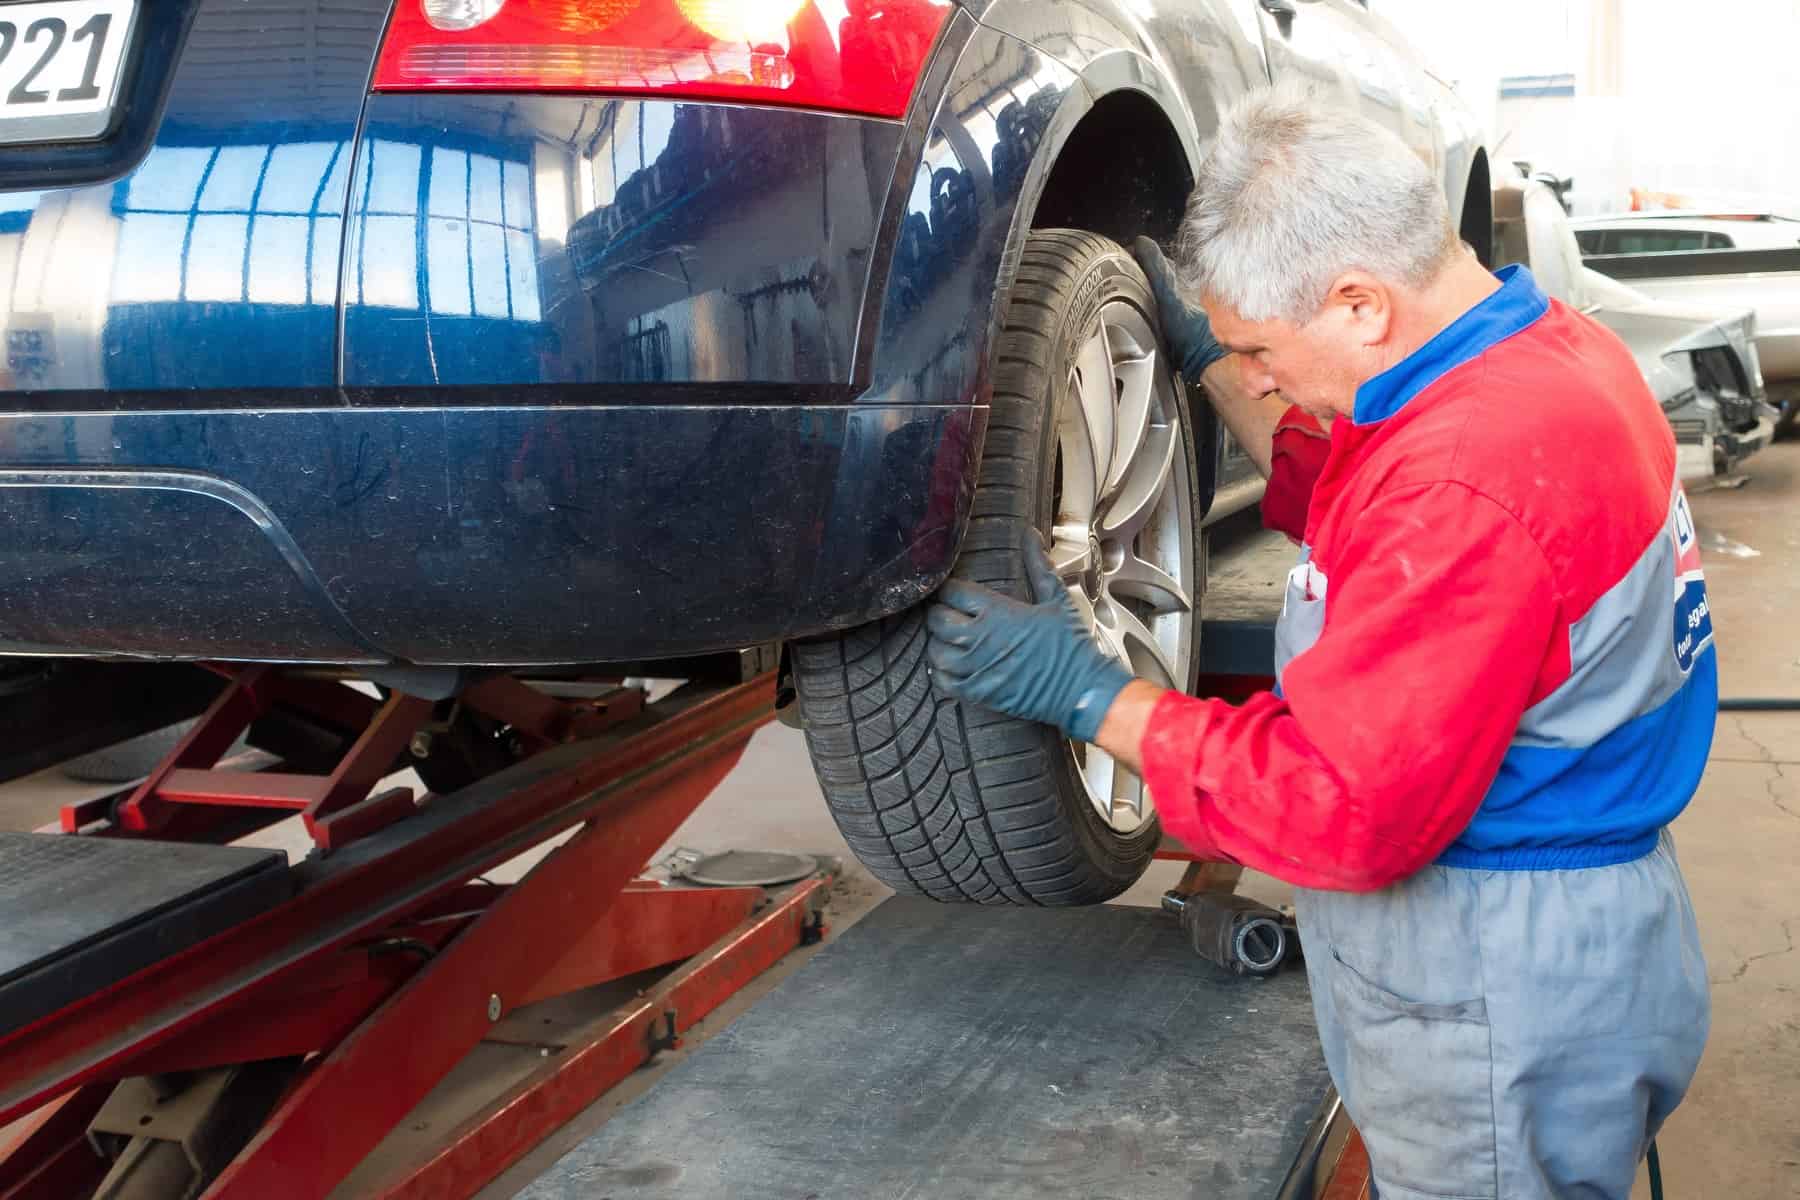 A man repairing a the rear tire of a car